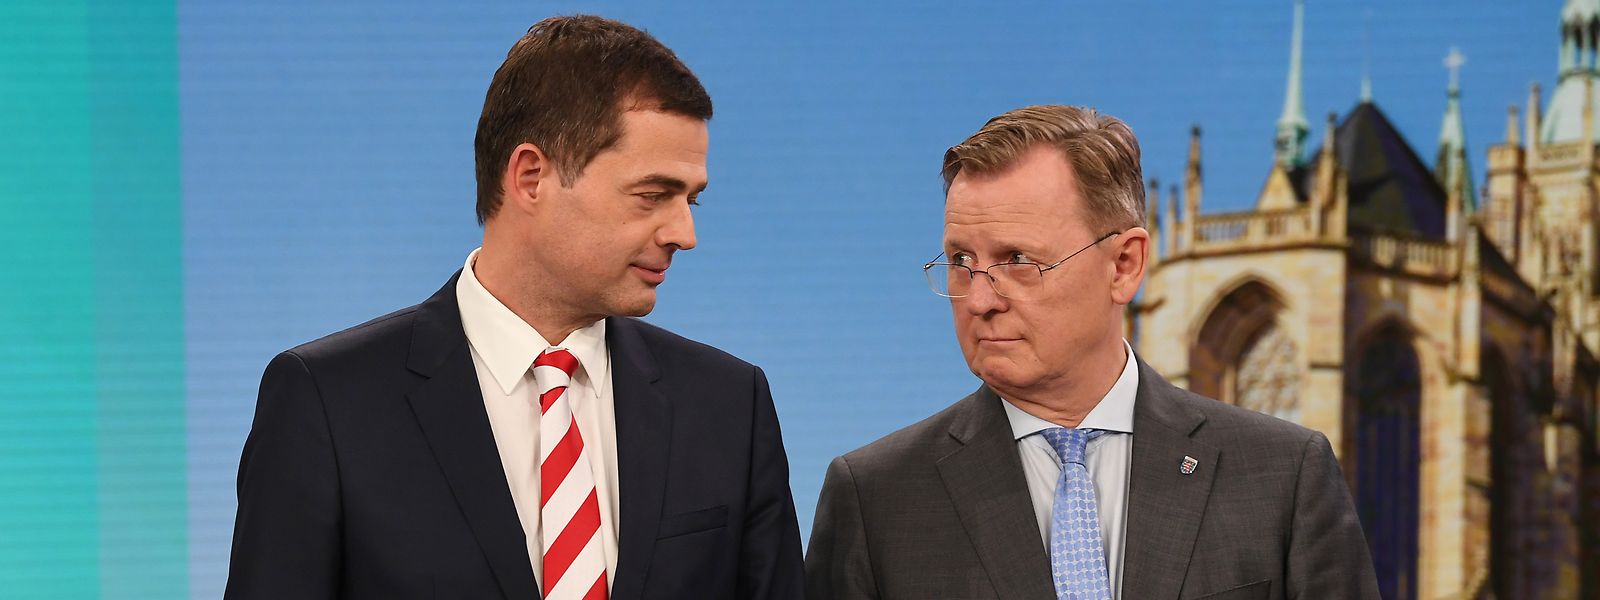 Mike Mohring (l), CDU-Spitzenkandidat, steht neben Bodo Ramelow (Die Linke), Ministerpräsident von Thüringen und Spitzenkandidat der Partei für die Landtagswahl, in einem Wahlstudio im Landtag. Ein Bündnis zwischen beiden Parteien erscheint zurzeit als einzig realistische Koalitionsoption.